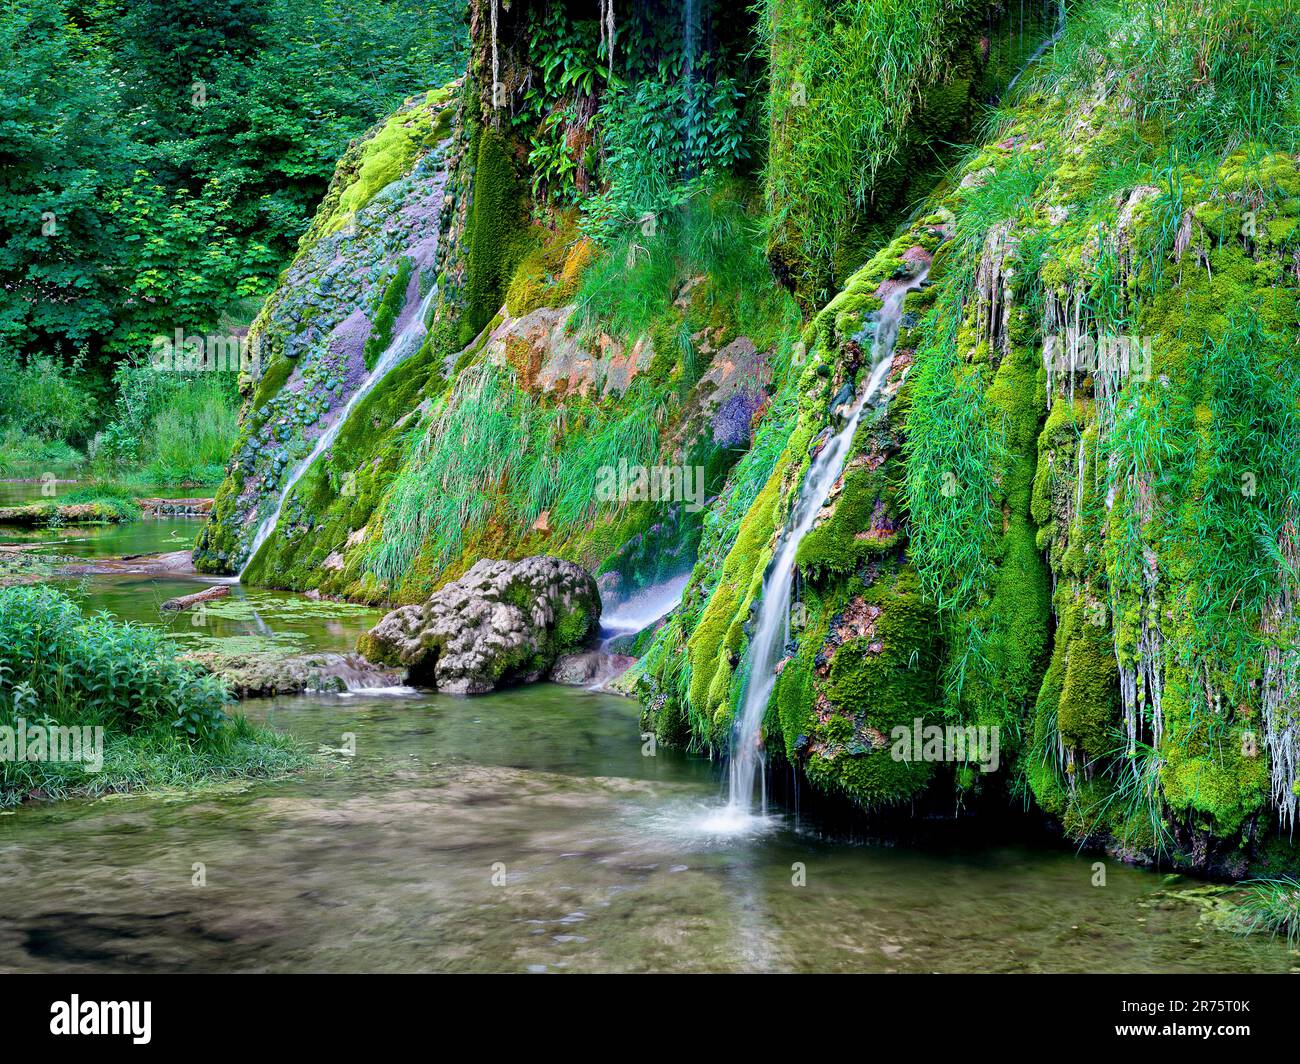 Cascade de Tufs, Baume-les-Messieurs, Jura, Bourgogne-Franche-Comté, France Stock Photo